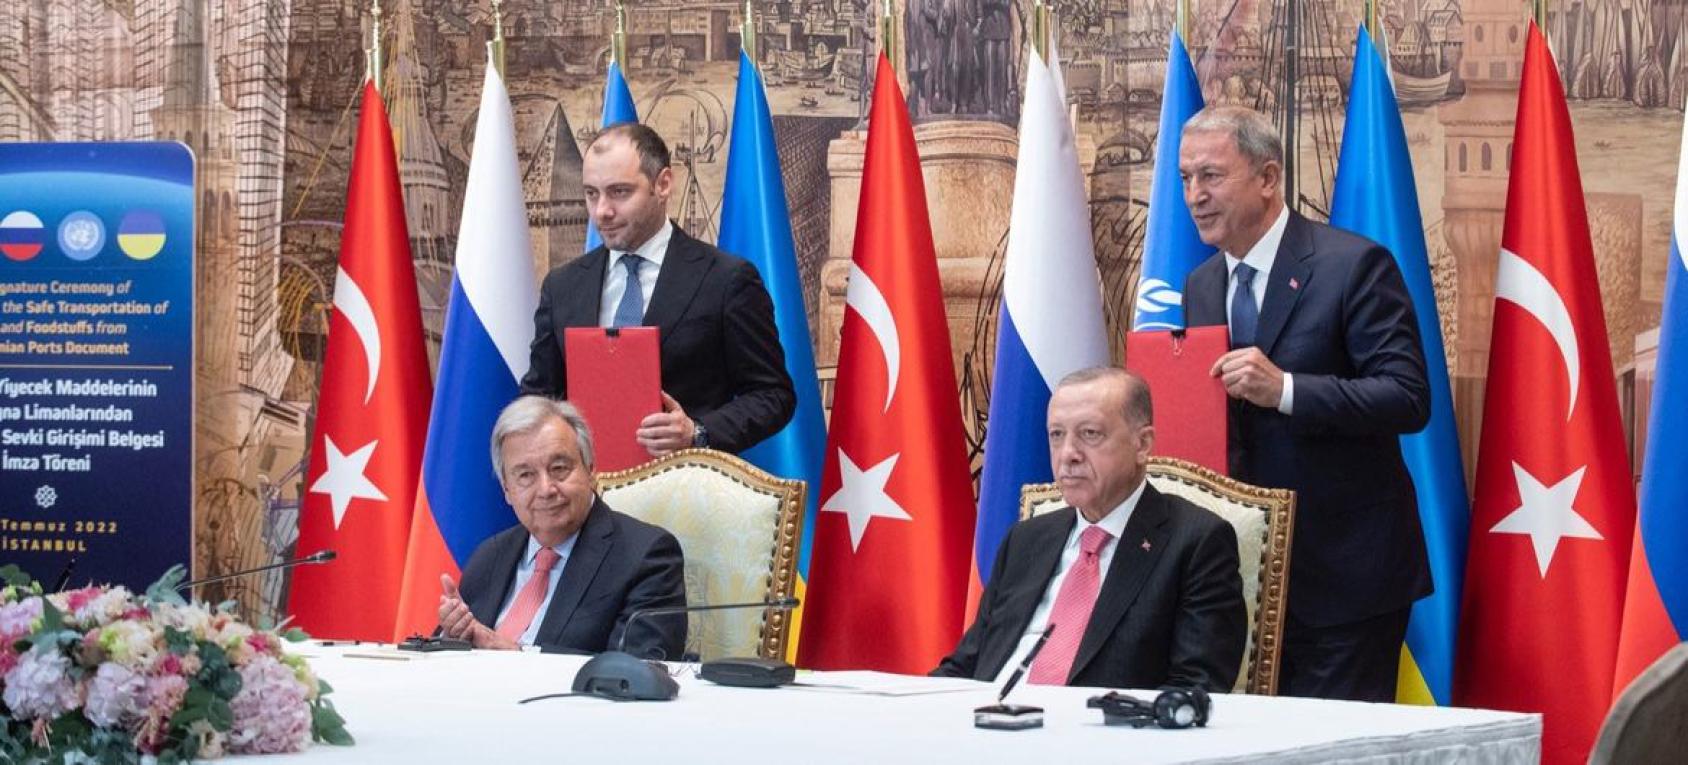 El Secretario General António Guterres (a la izquierda) y el presidente turco Recep Tayyip Erdoğan en la ceremonia de firma de la Iniciativa de Granos del Mar Negro en Estambul.